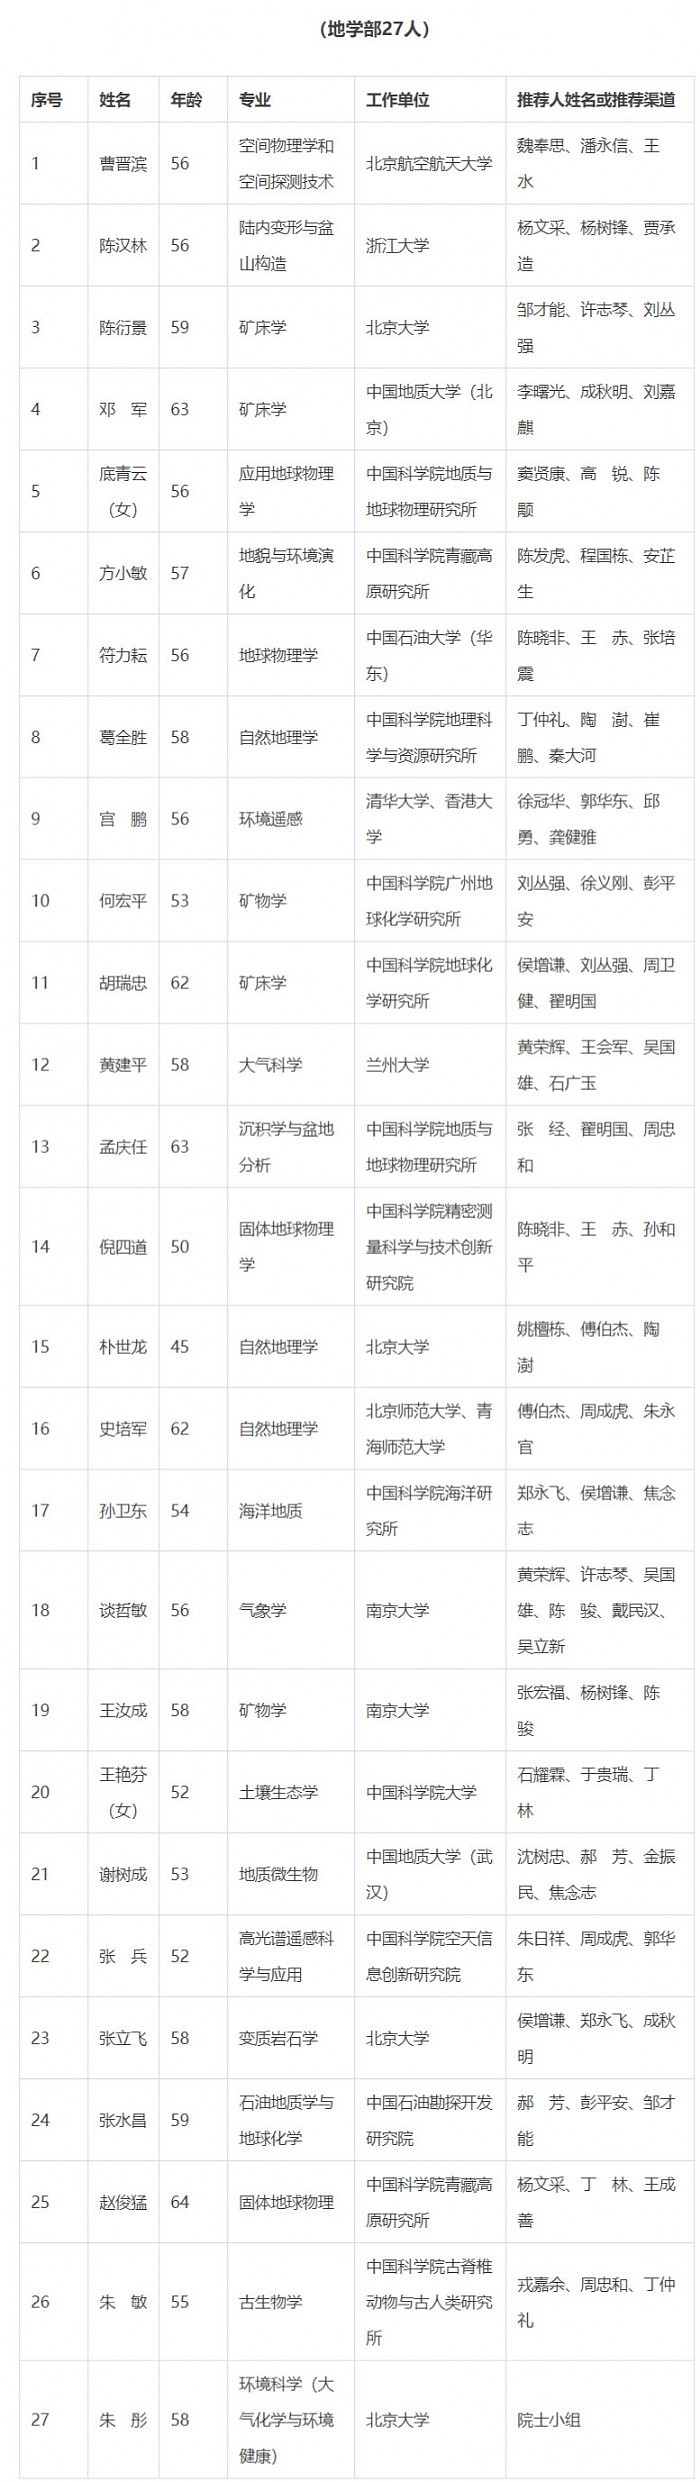 2021年中国科学院院士增选初步候选人名单公布 - 7